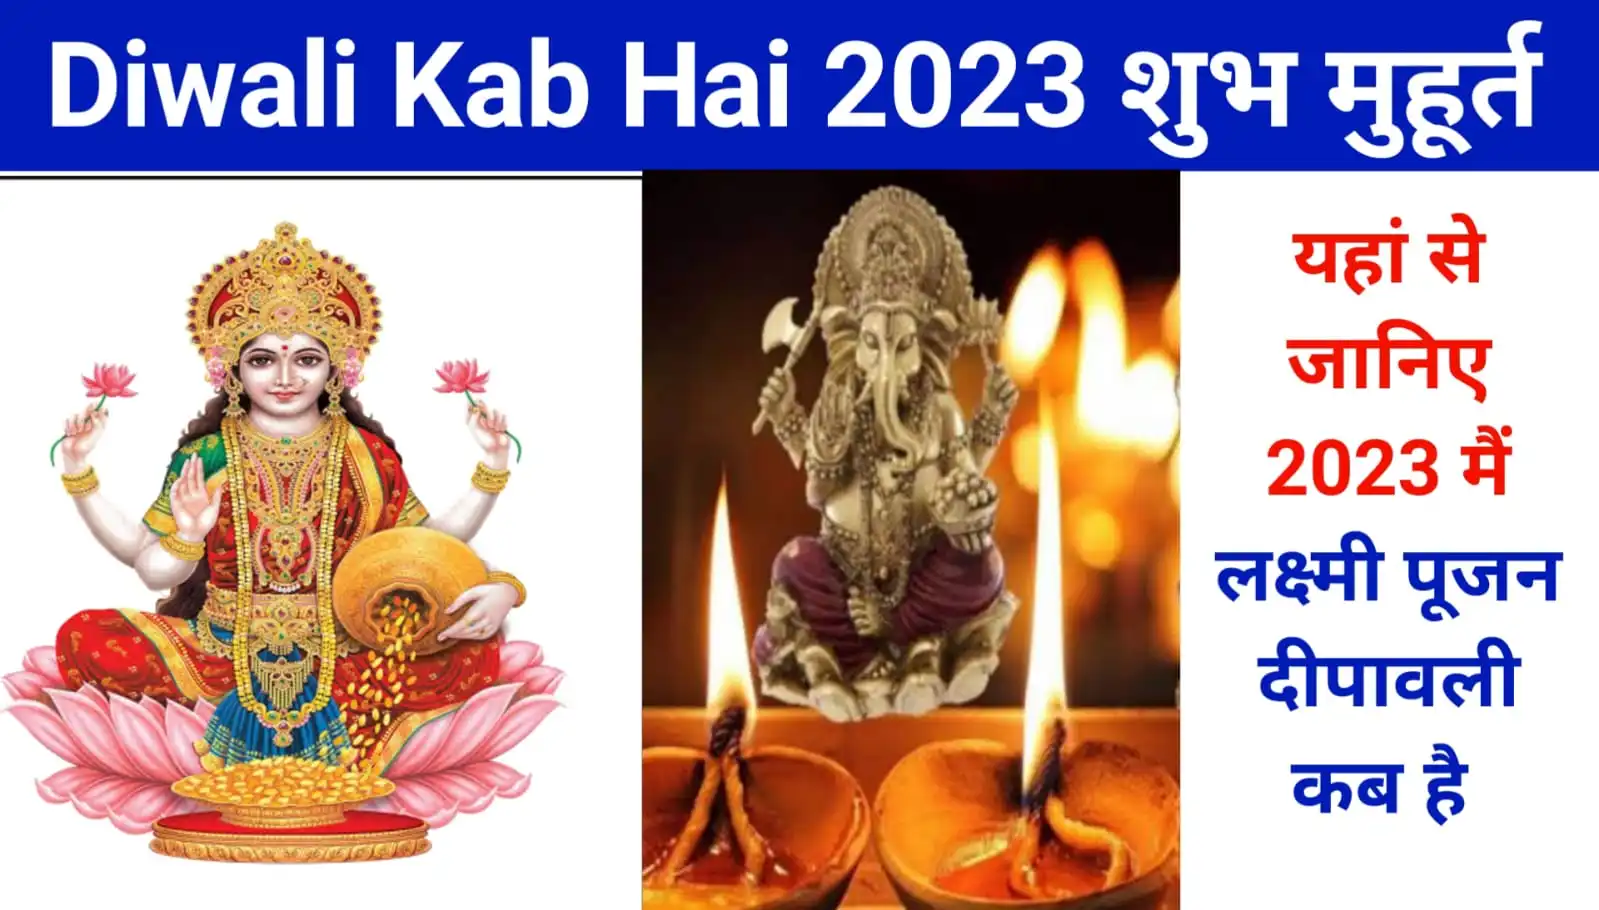 Diwali Kab Hai 2023